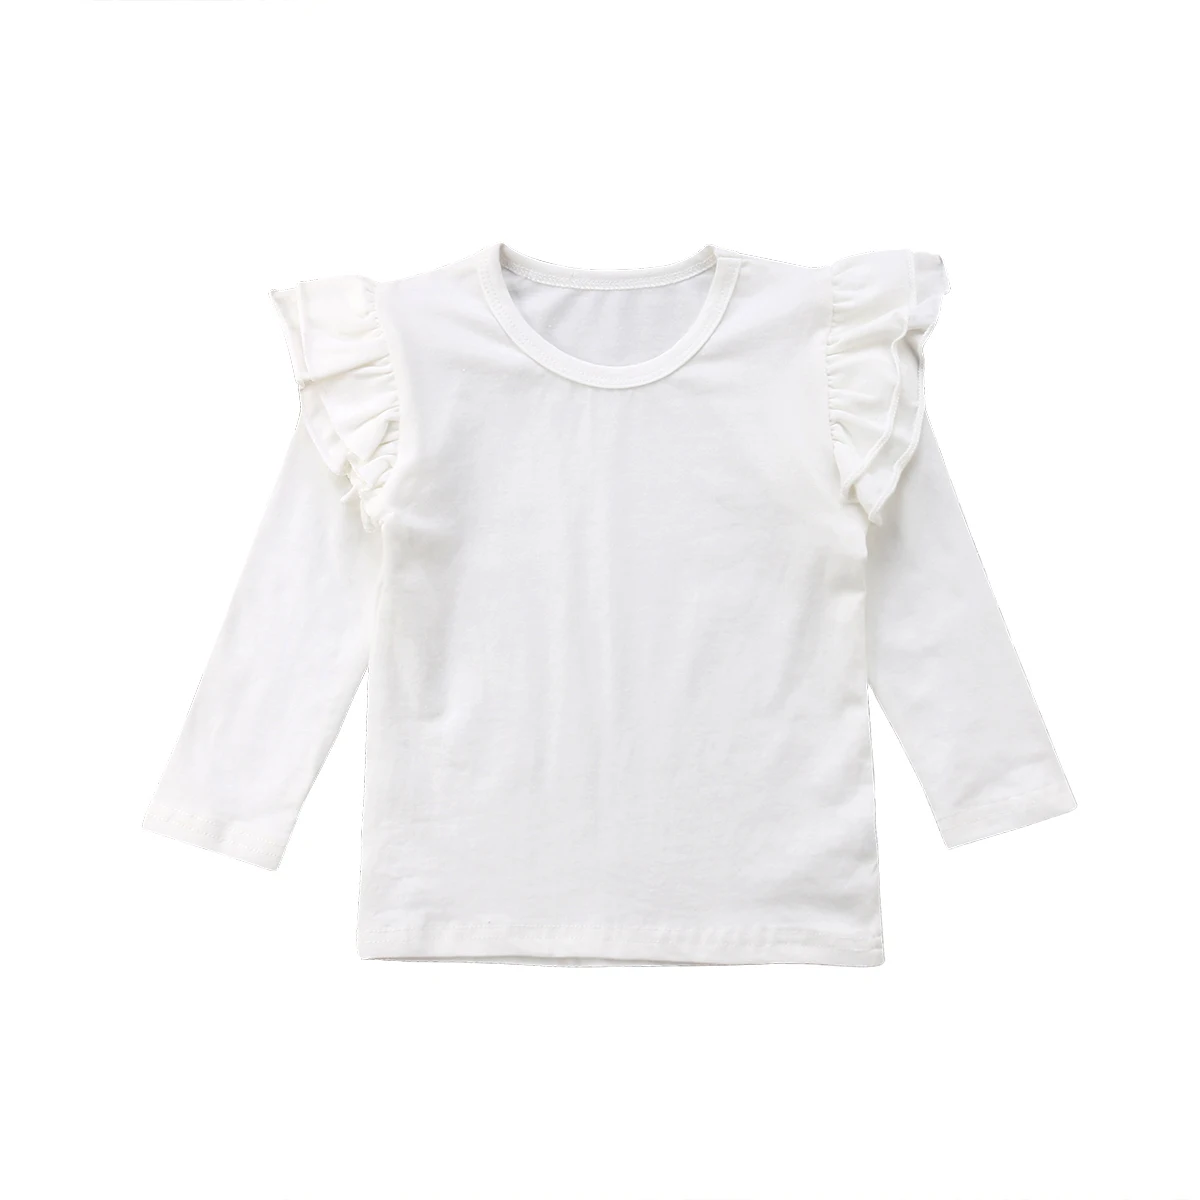 Детская футболка для маленьких мальчиков и девочек, топы, пуловер, одежда, блузка, хлопковая футболка с длинными рукавами, размер 1-5 лет - Цвет: Белый